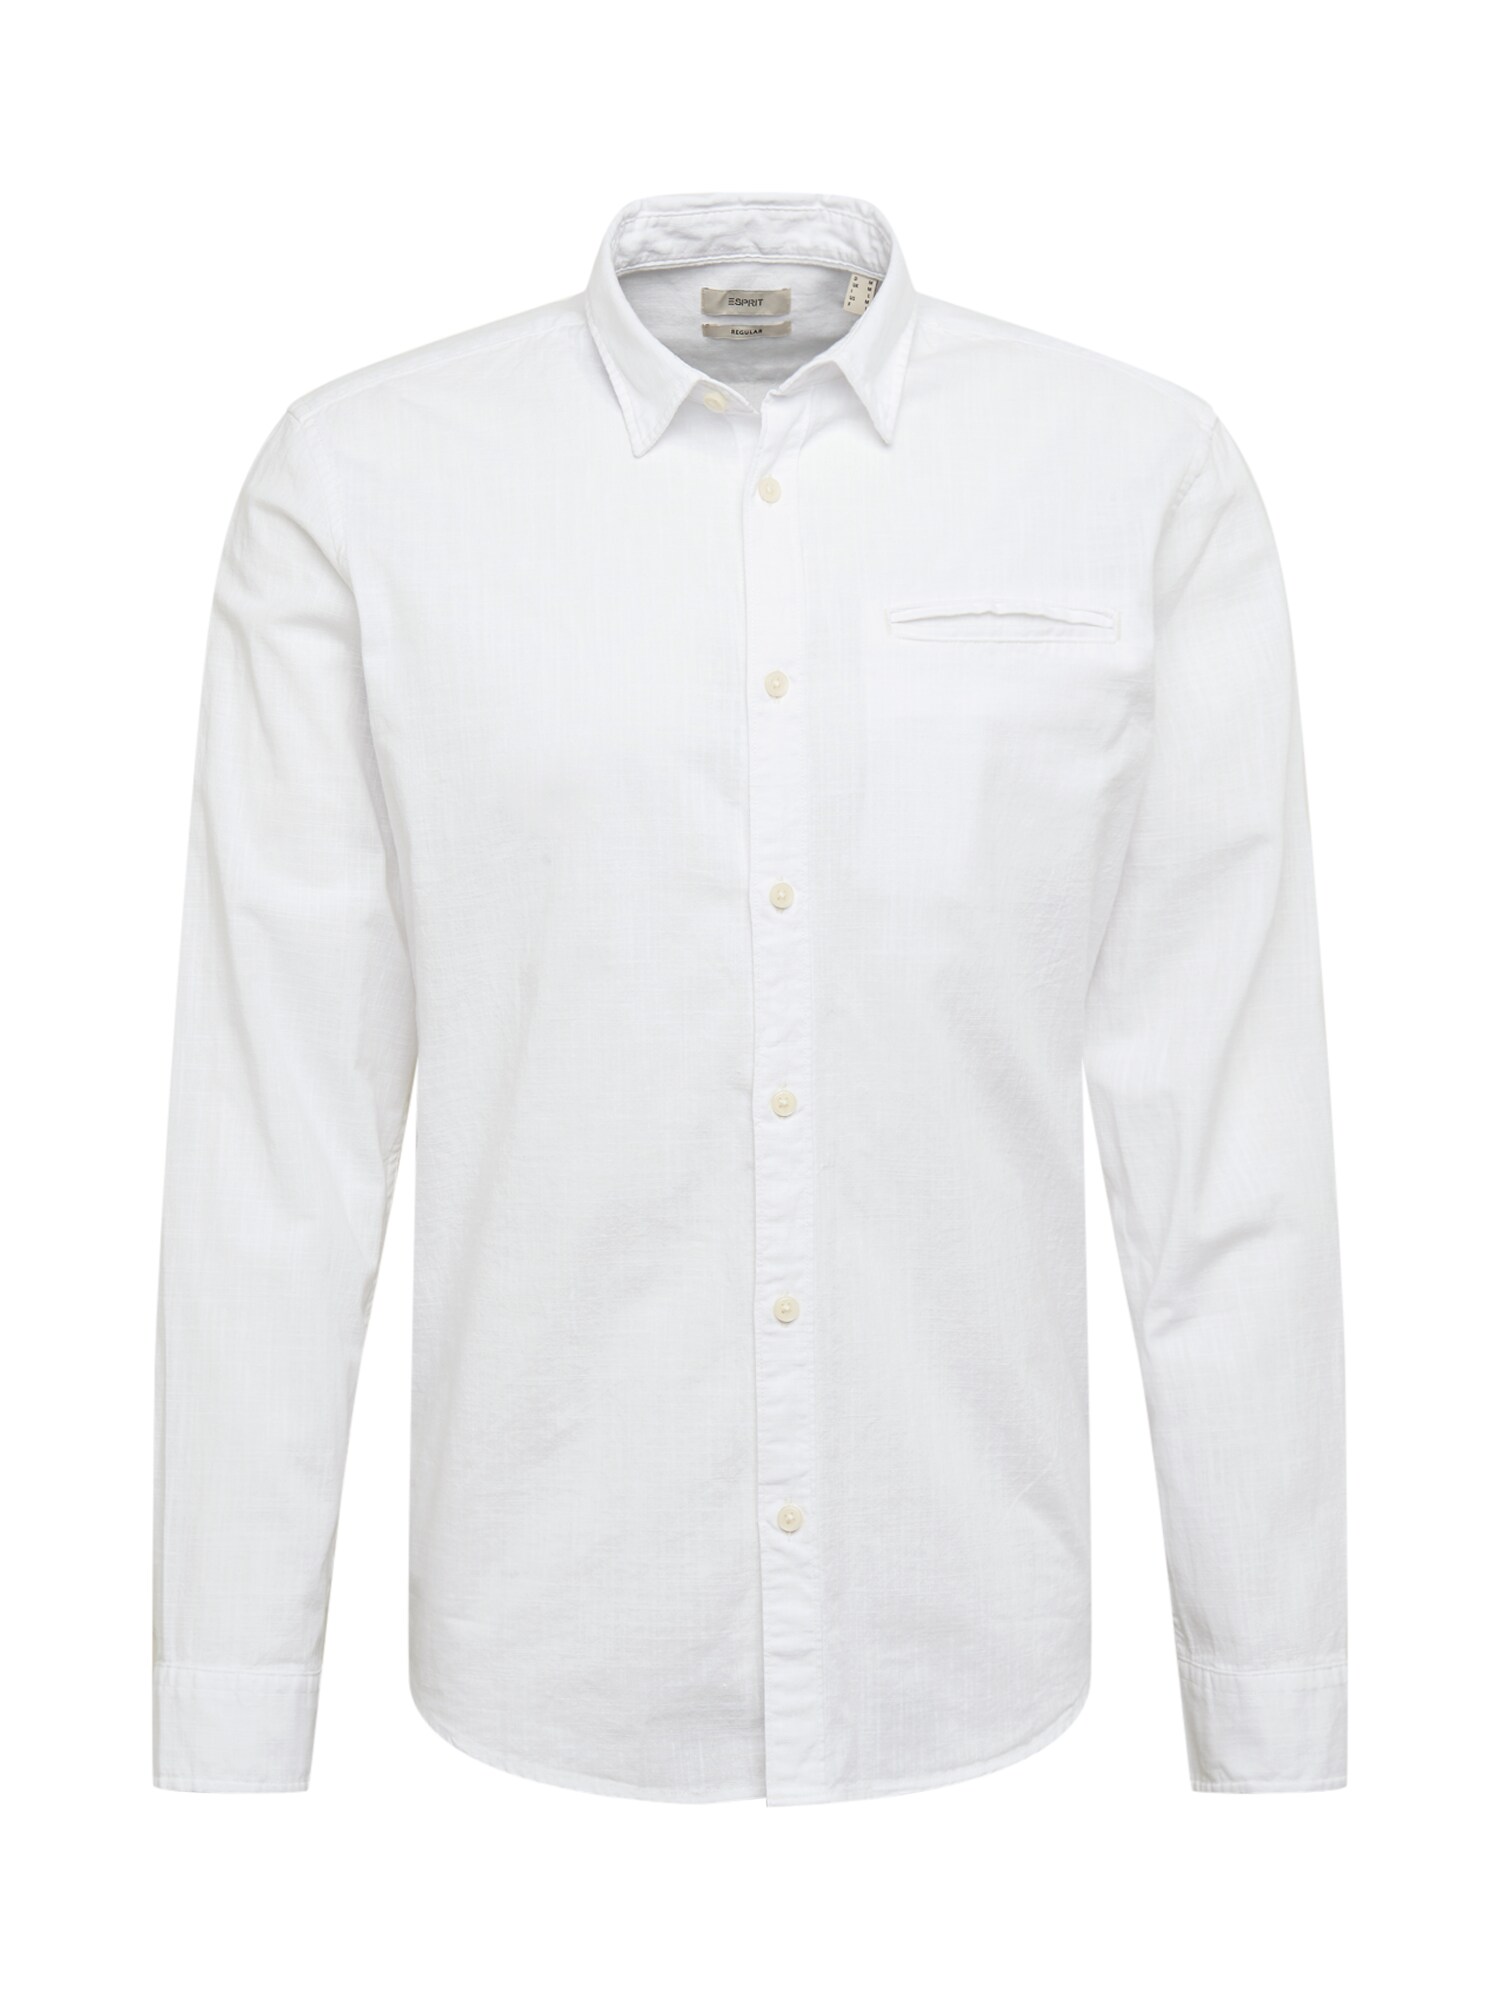 ESPRIT Dalykiniai marškiniai  margai balta